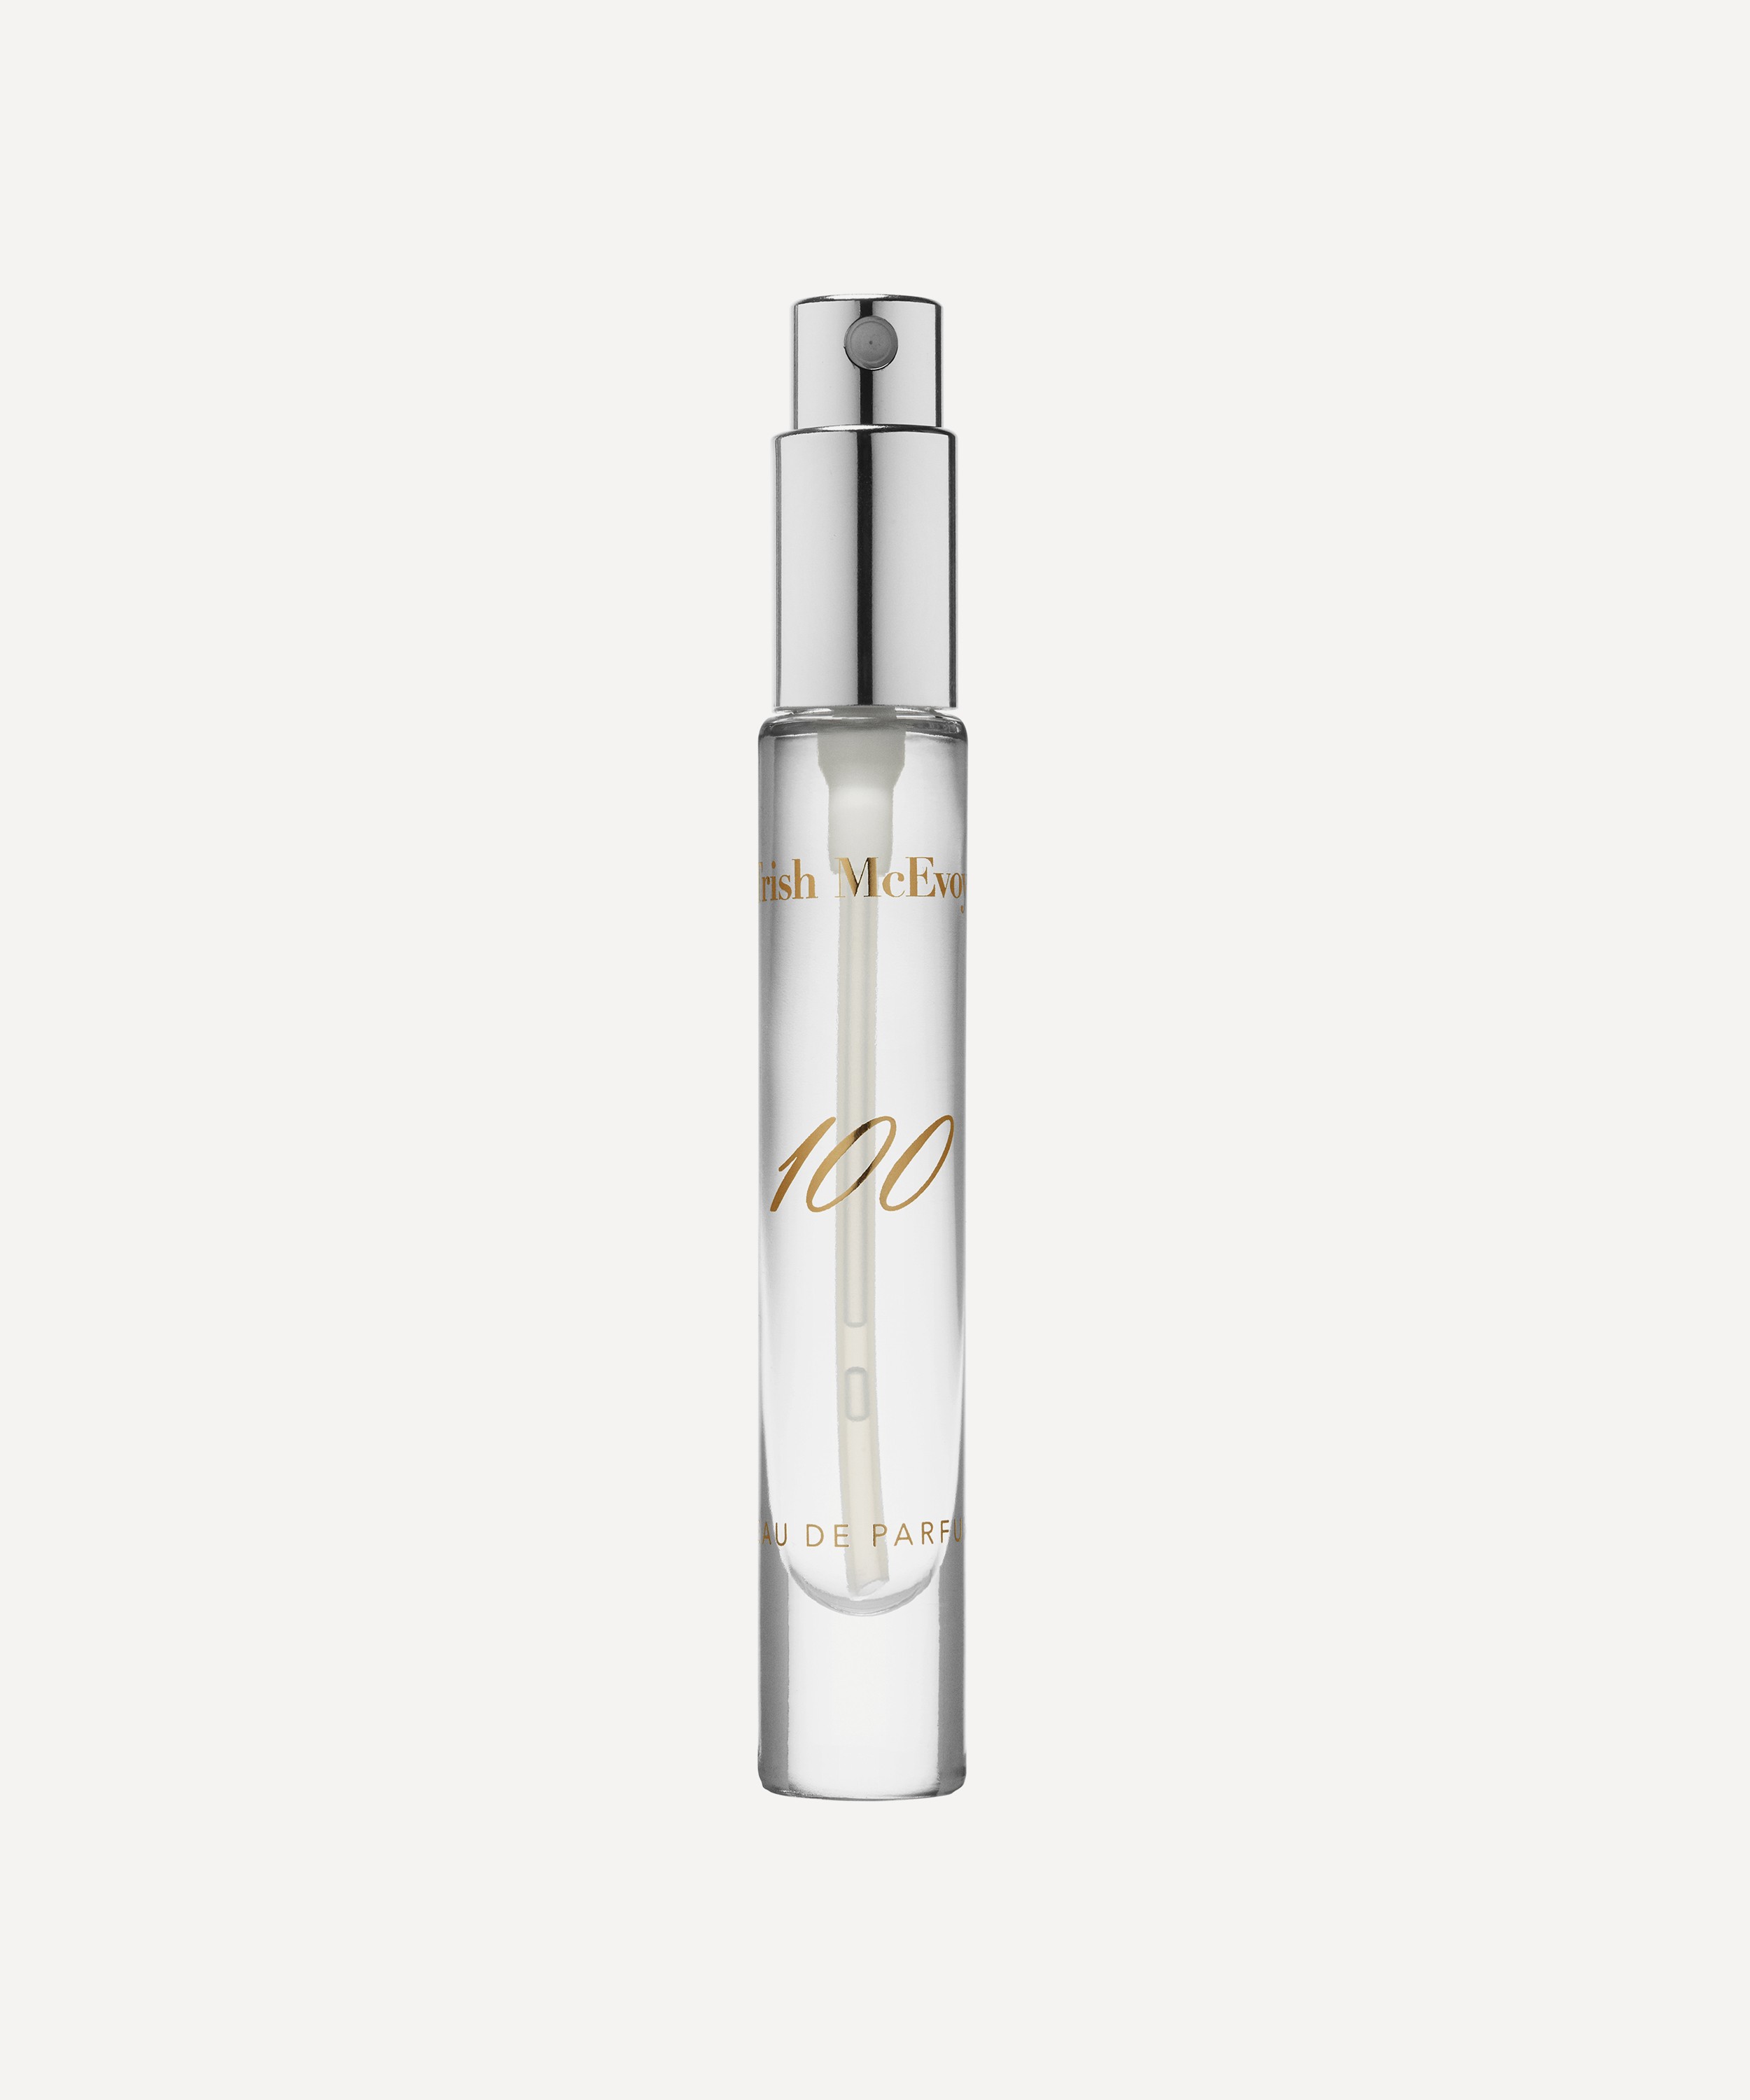 Trish McEvoy - 100 Eau de Parfum Refillable Pen Spray 6ml image number 1